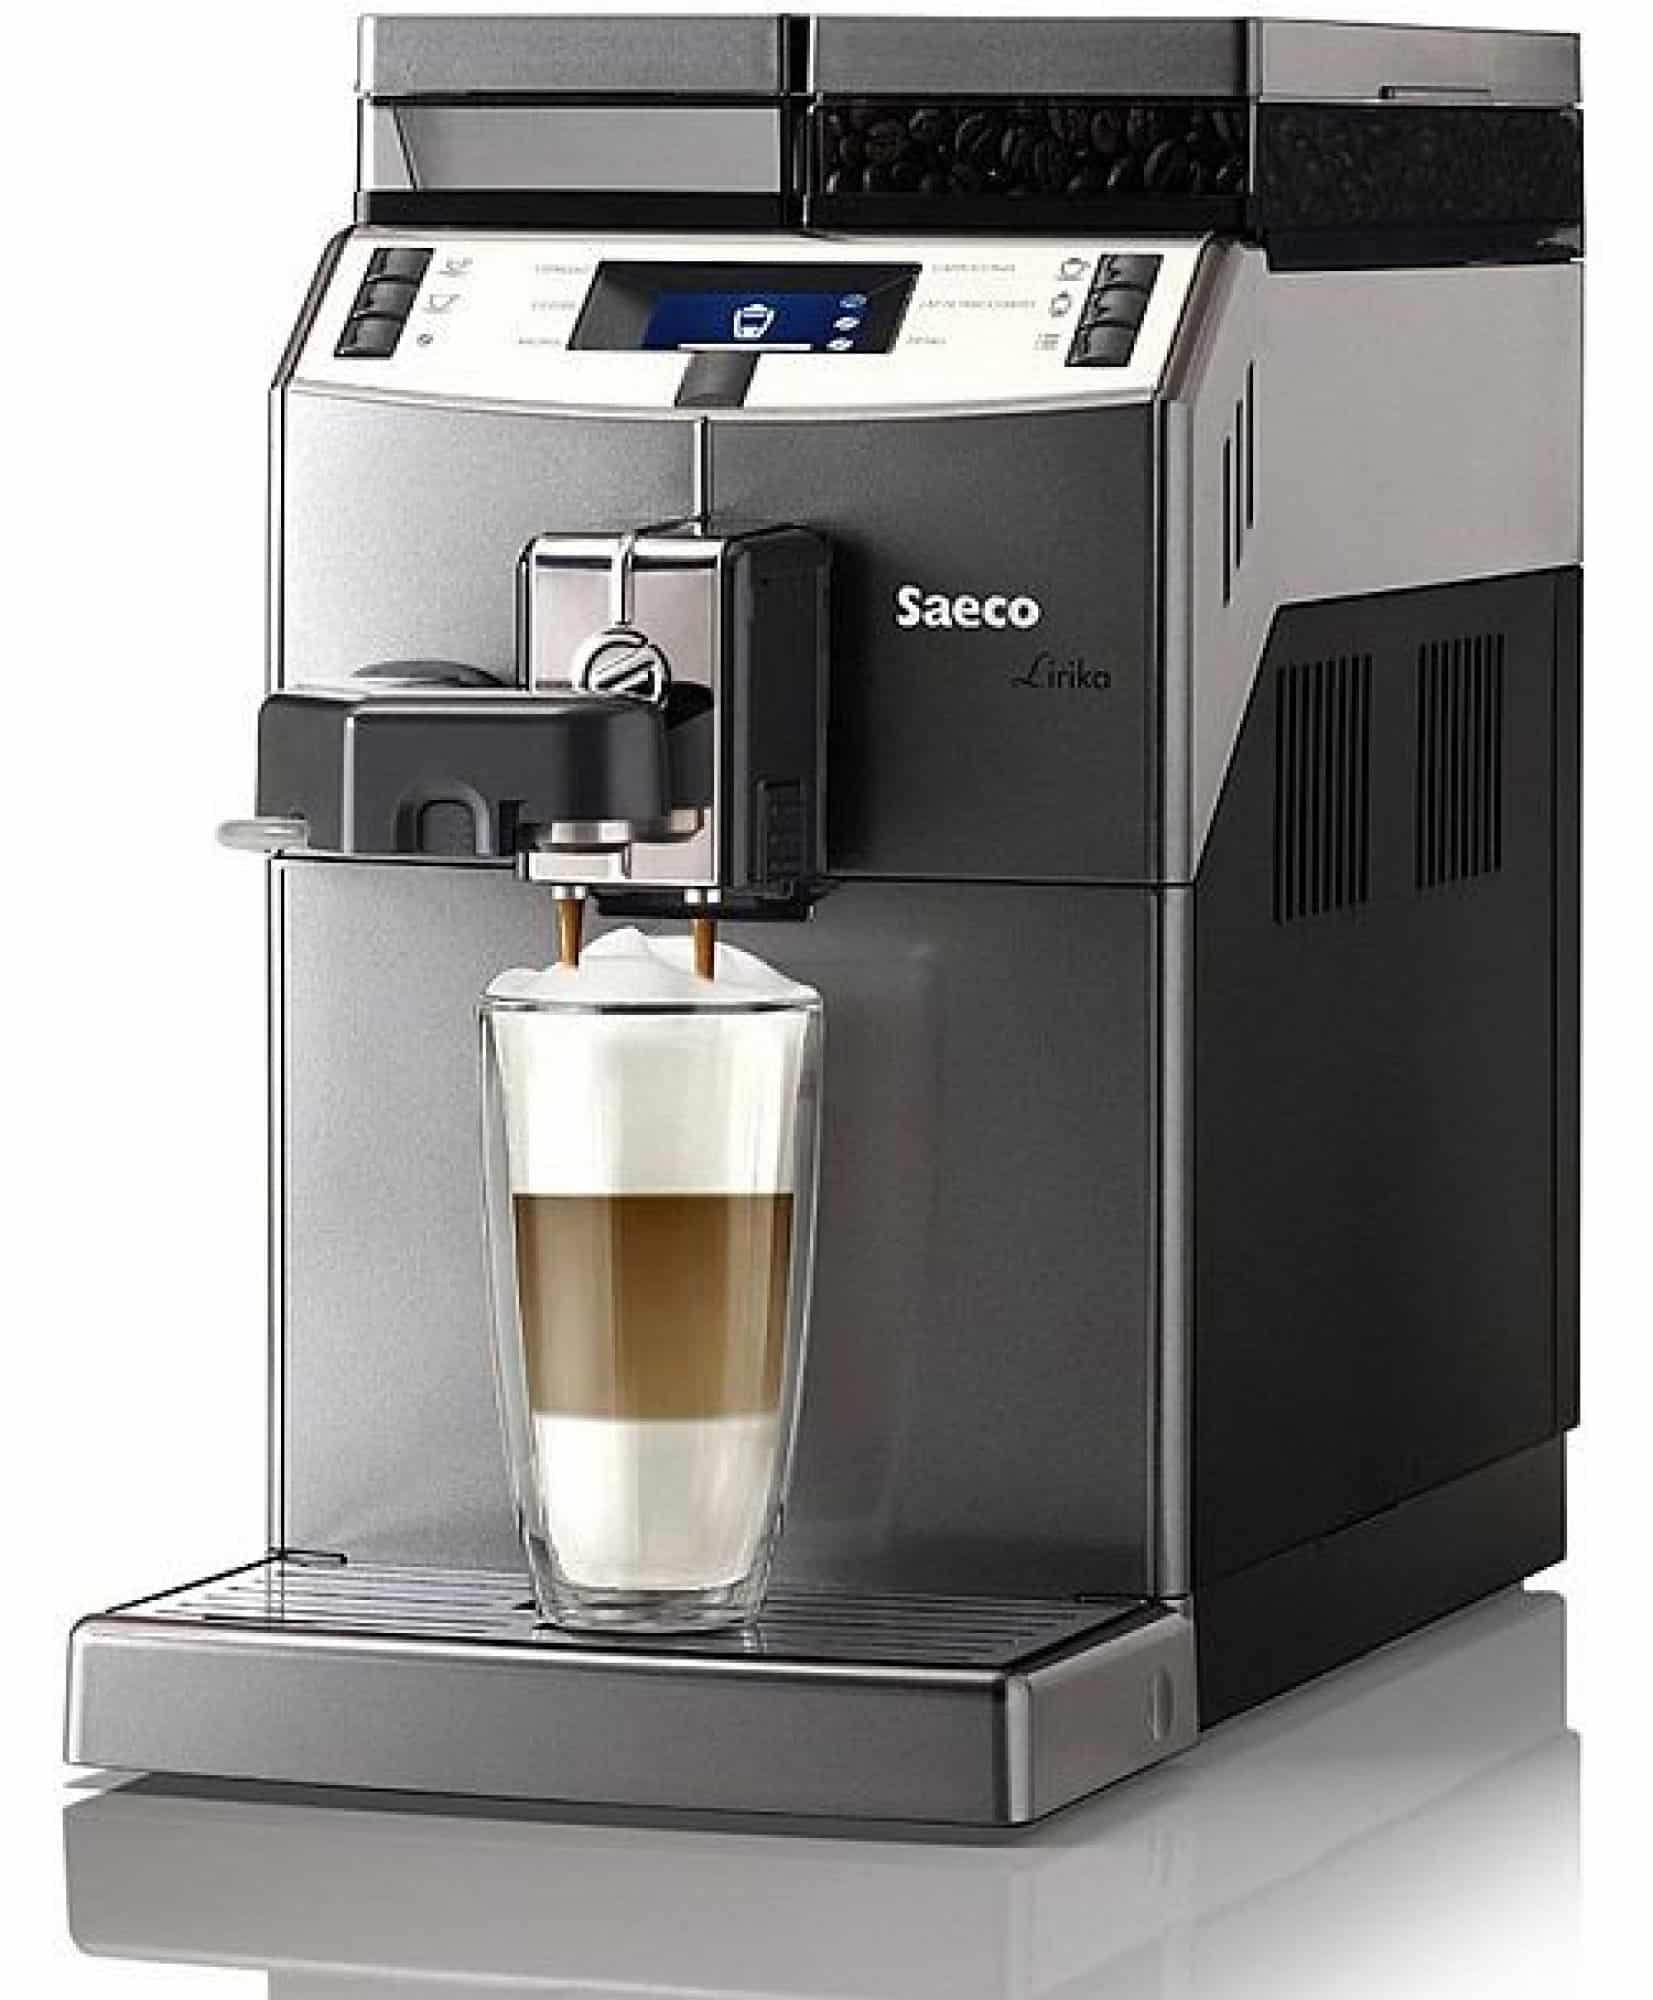 Kvalitní kávovar kompaktních rozměrů značky Saeco.